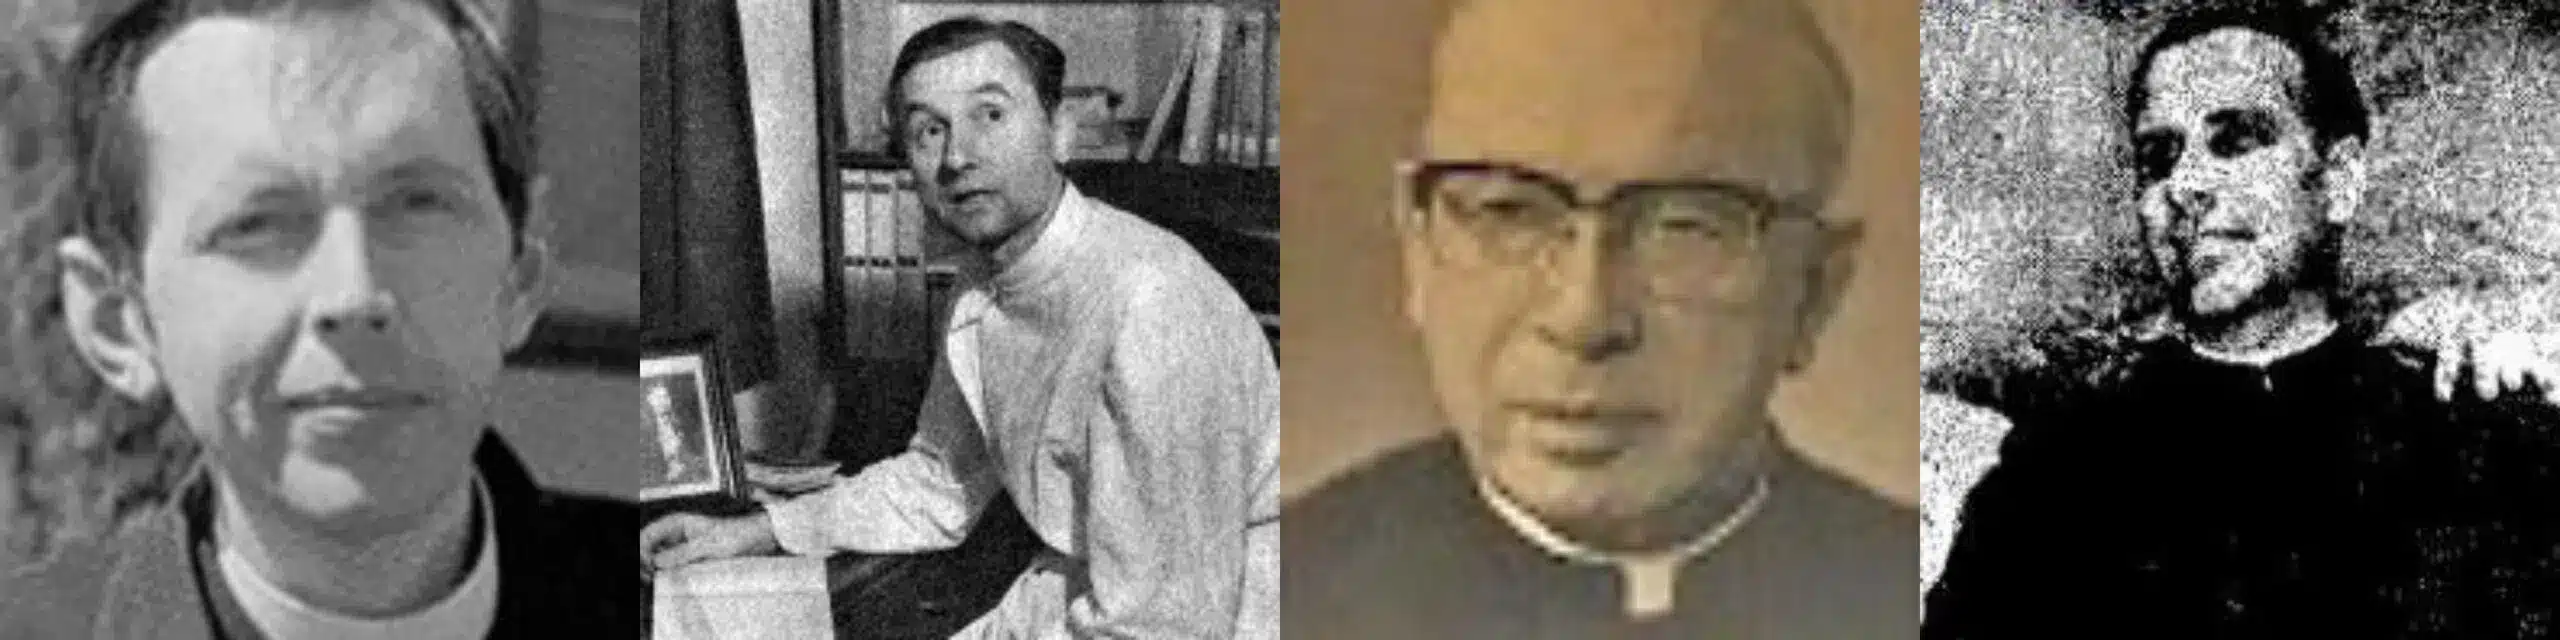 Sacedotes jesuitas que sobrevivieron a la bomba de Hiroshima (Foto: Vatican)